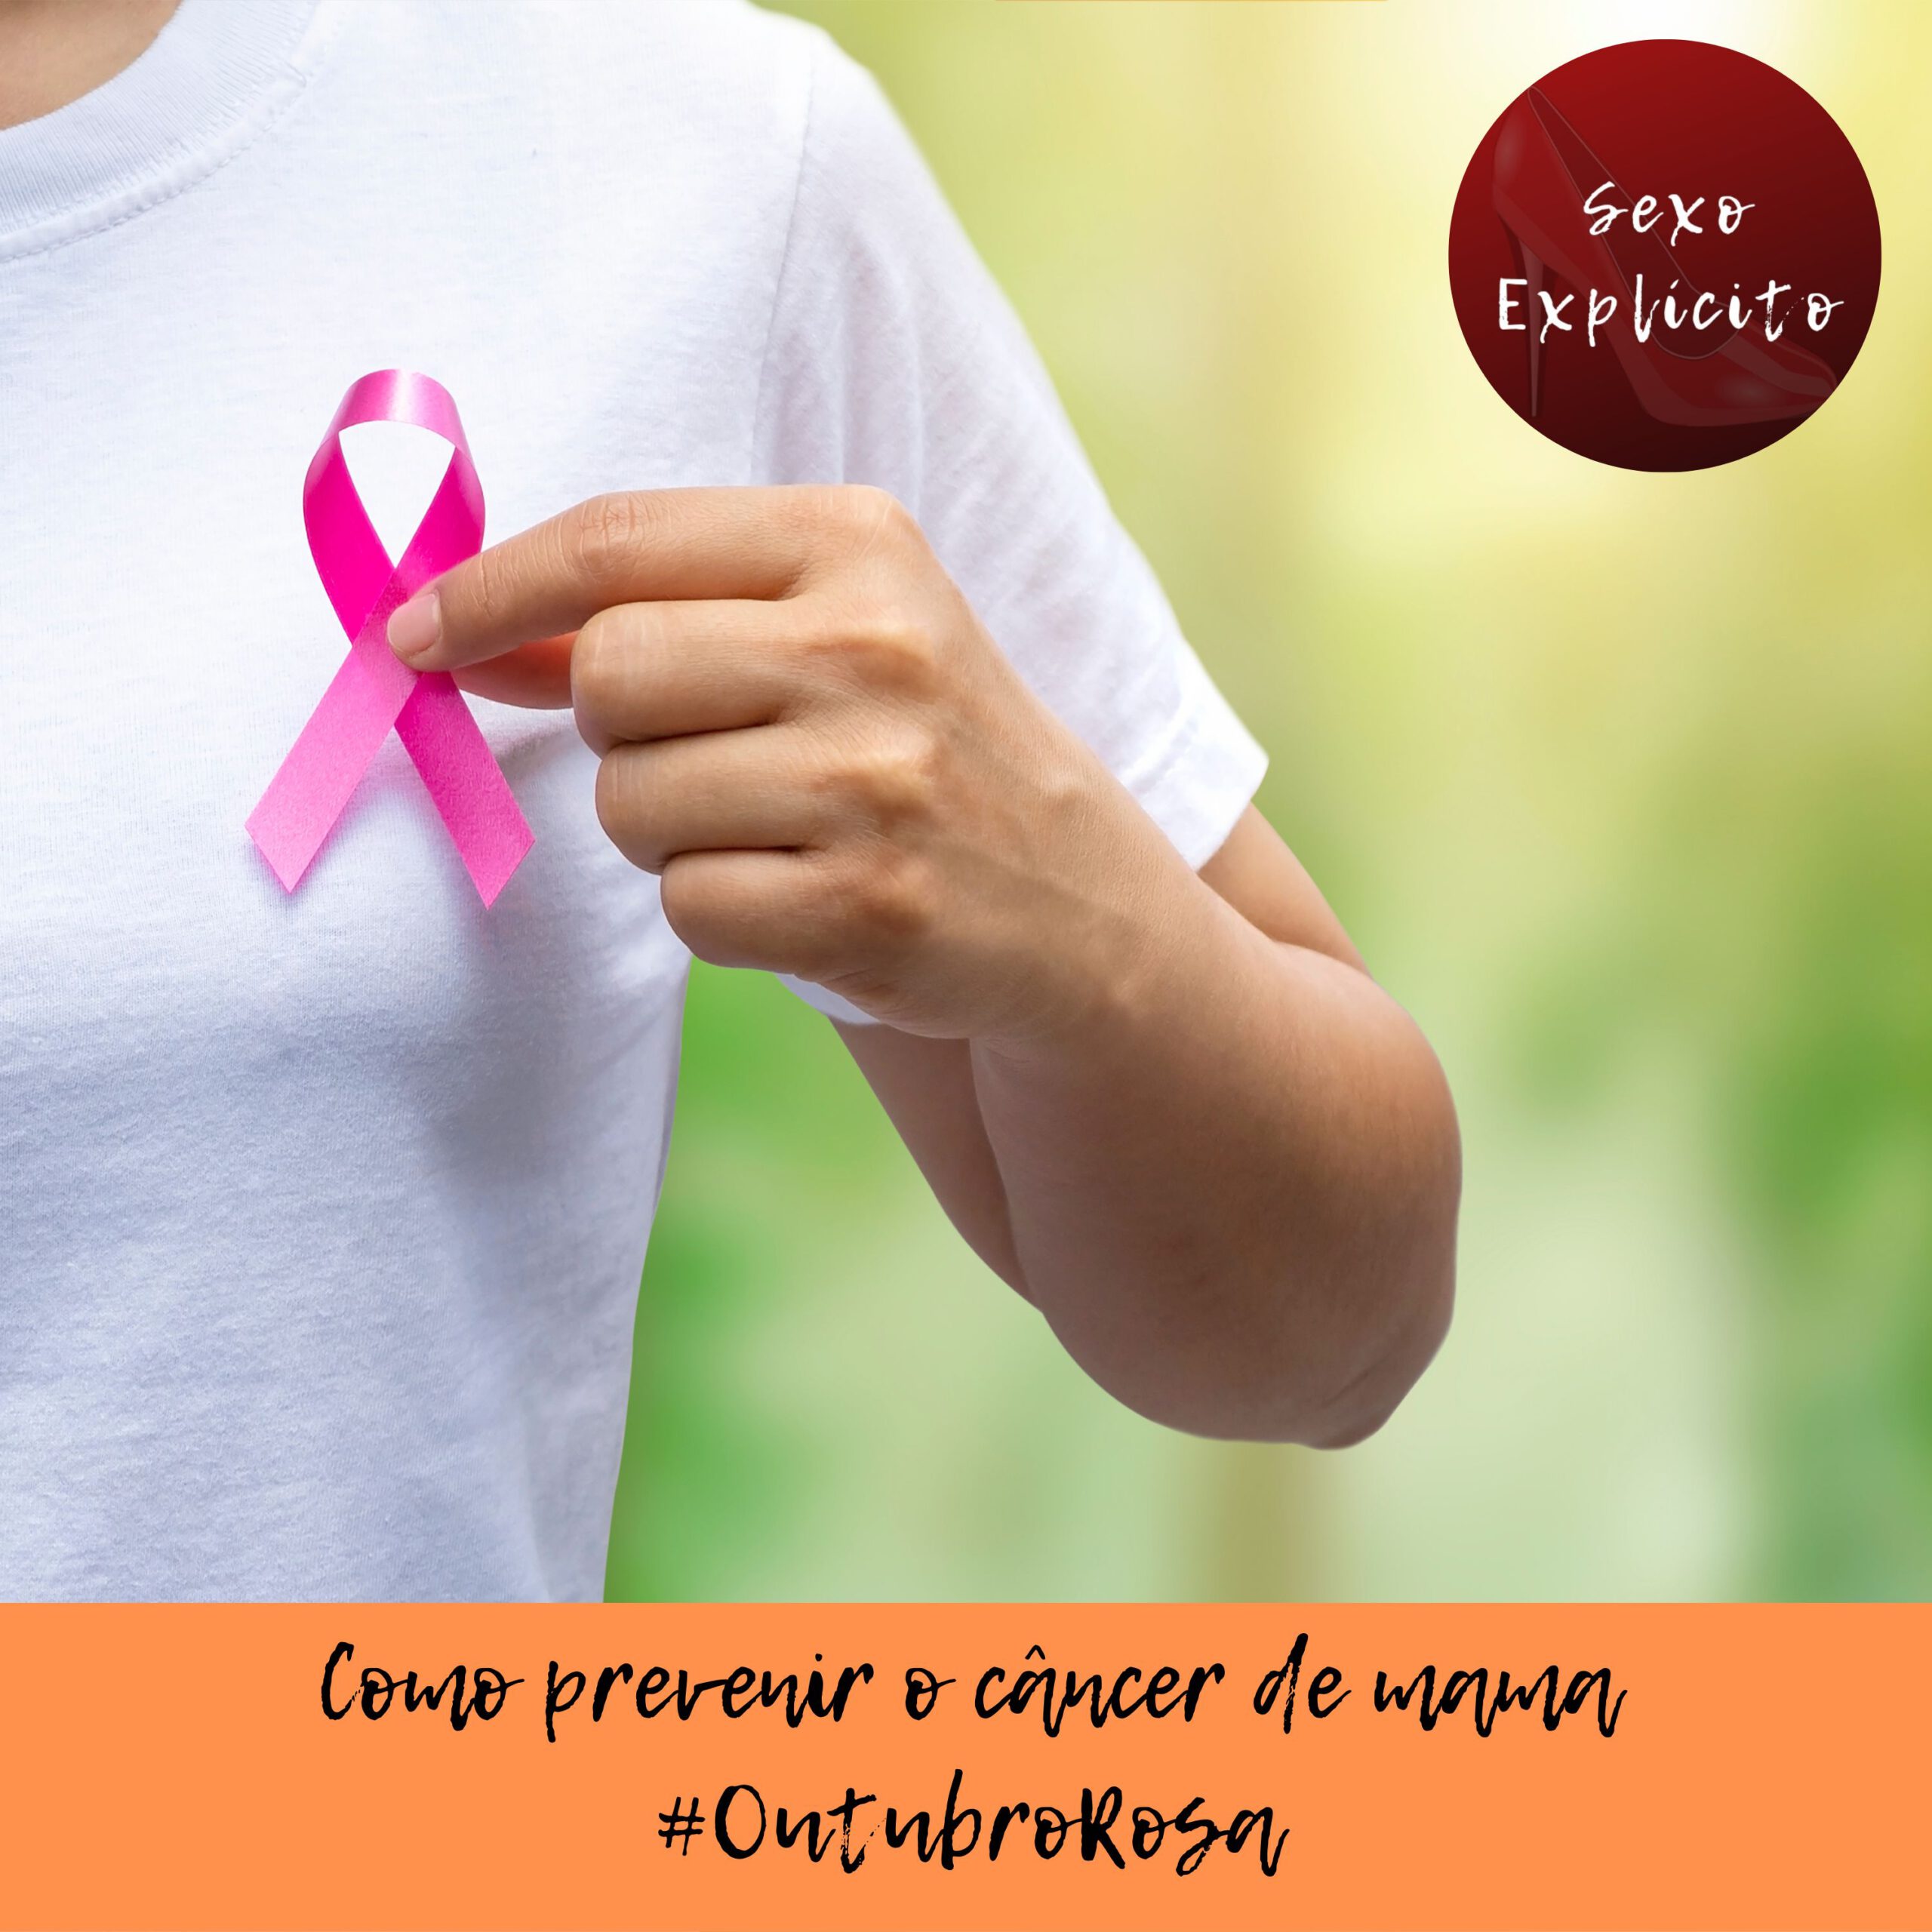 Como prevenir o câncer de mama – #OutubroRosa